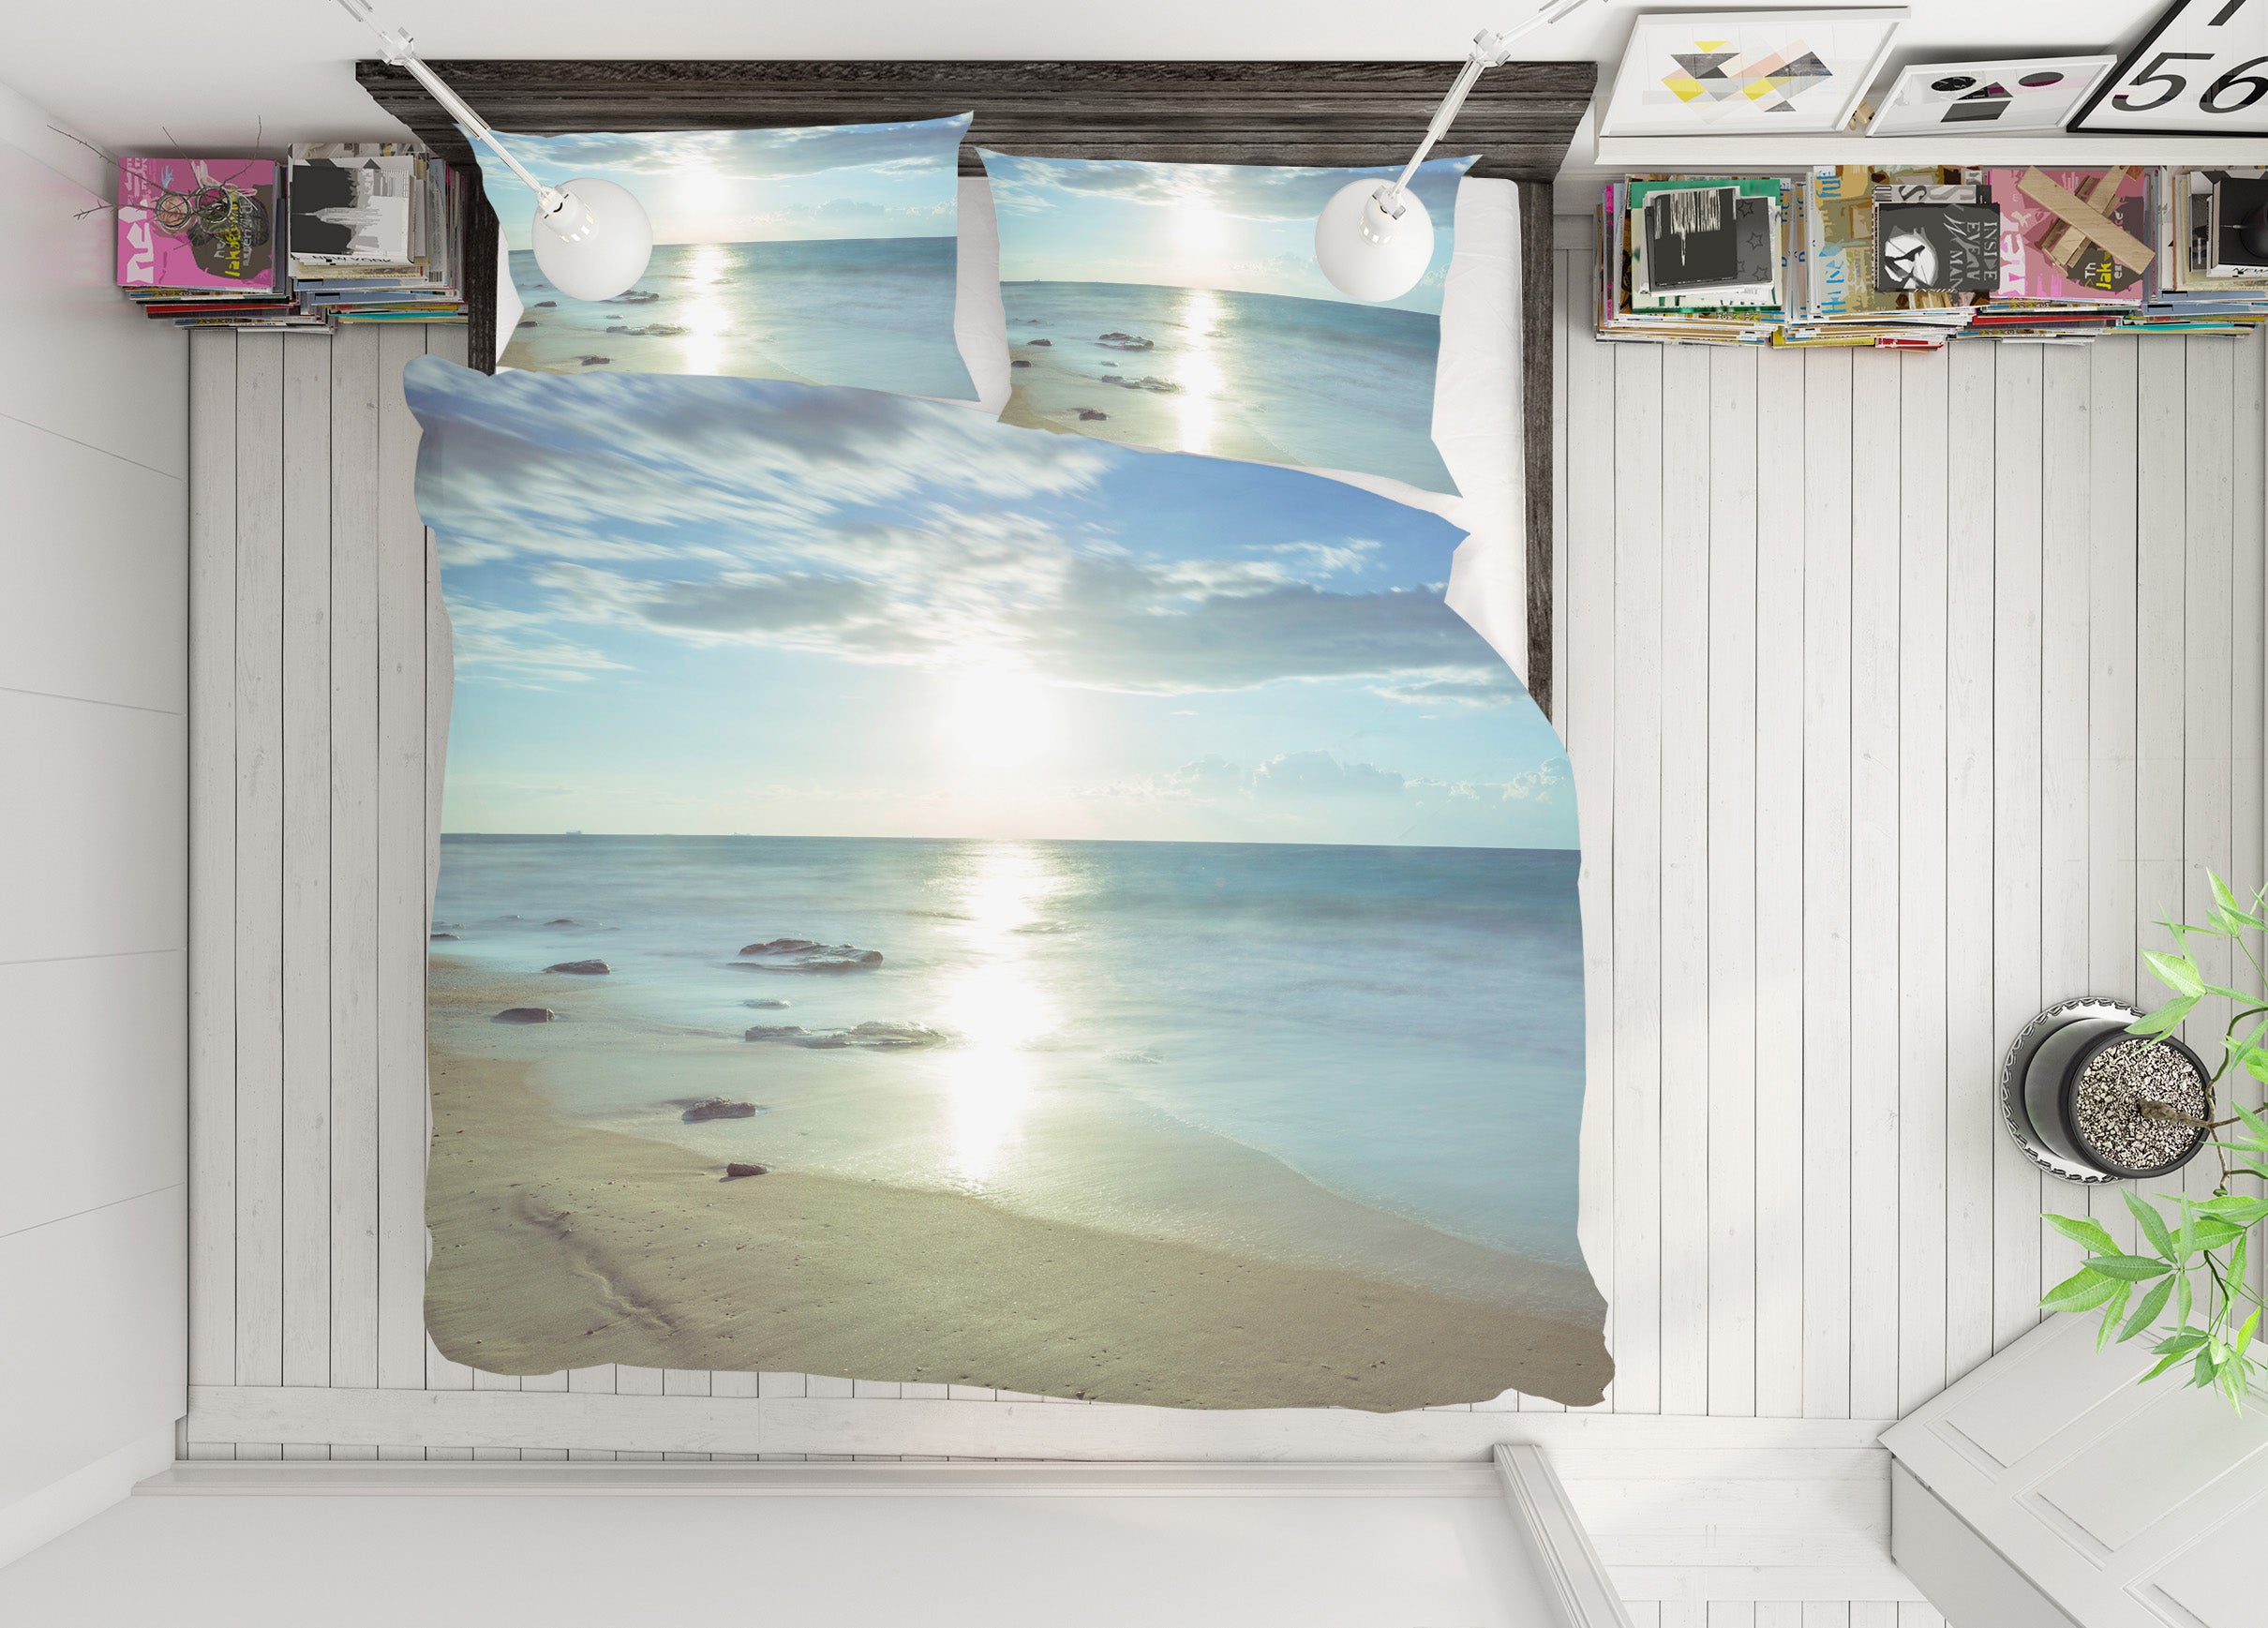 3D Sun Beach Sea 1031 Assaf Frank Bedding Bed Pillowcases Quilt